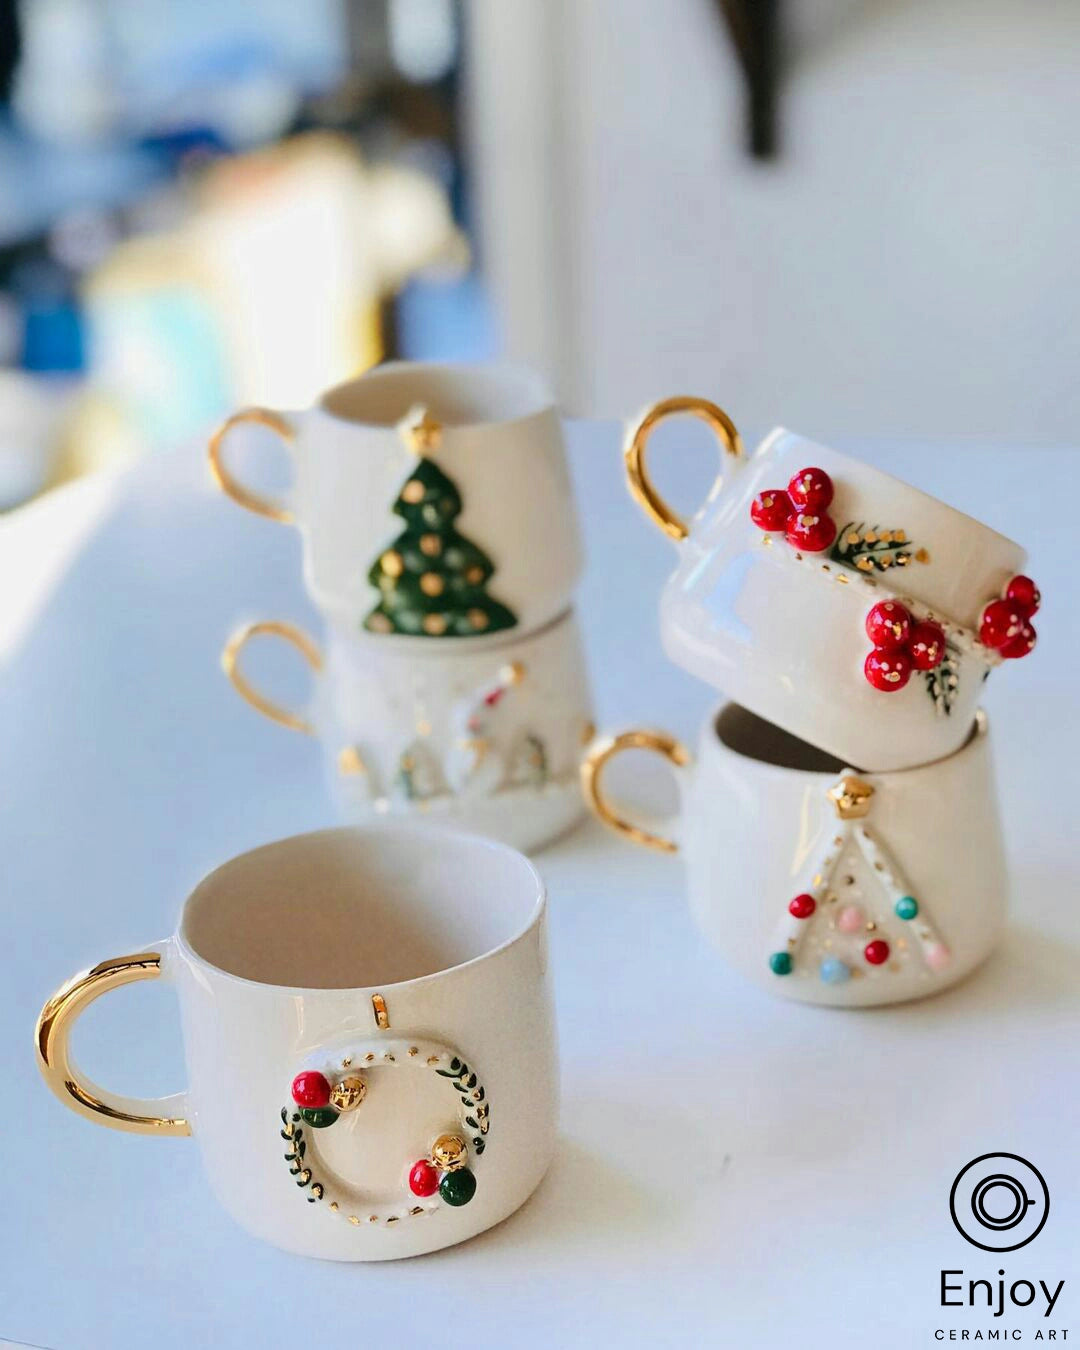 Handcrafted Christmas Wreath Espresso Cup & Saucer Set, 5.4 oz - Ceramic Santa Espresso Mugs, Holiday-Themed Espresso Coffee Cups